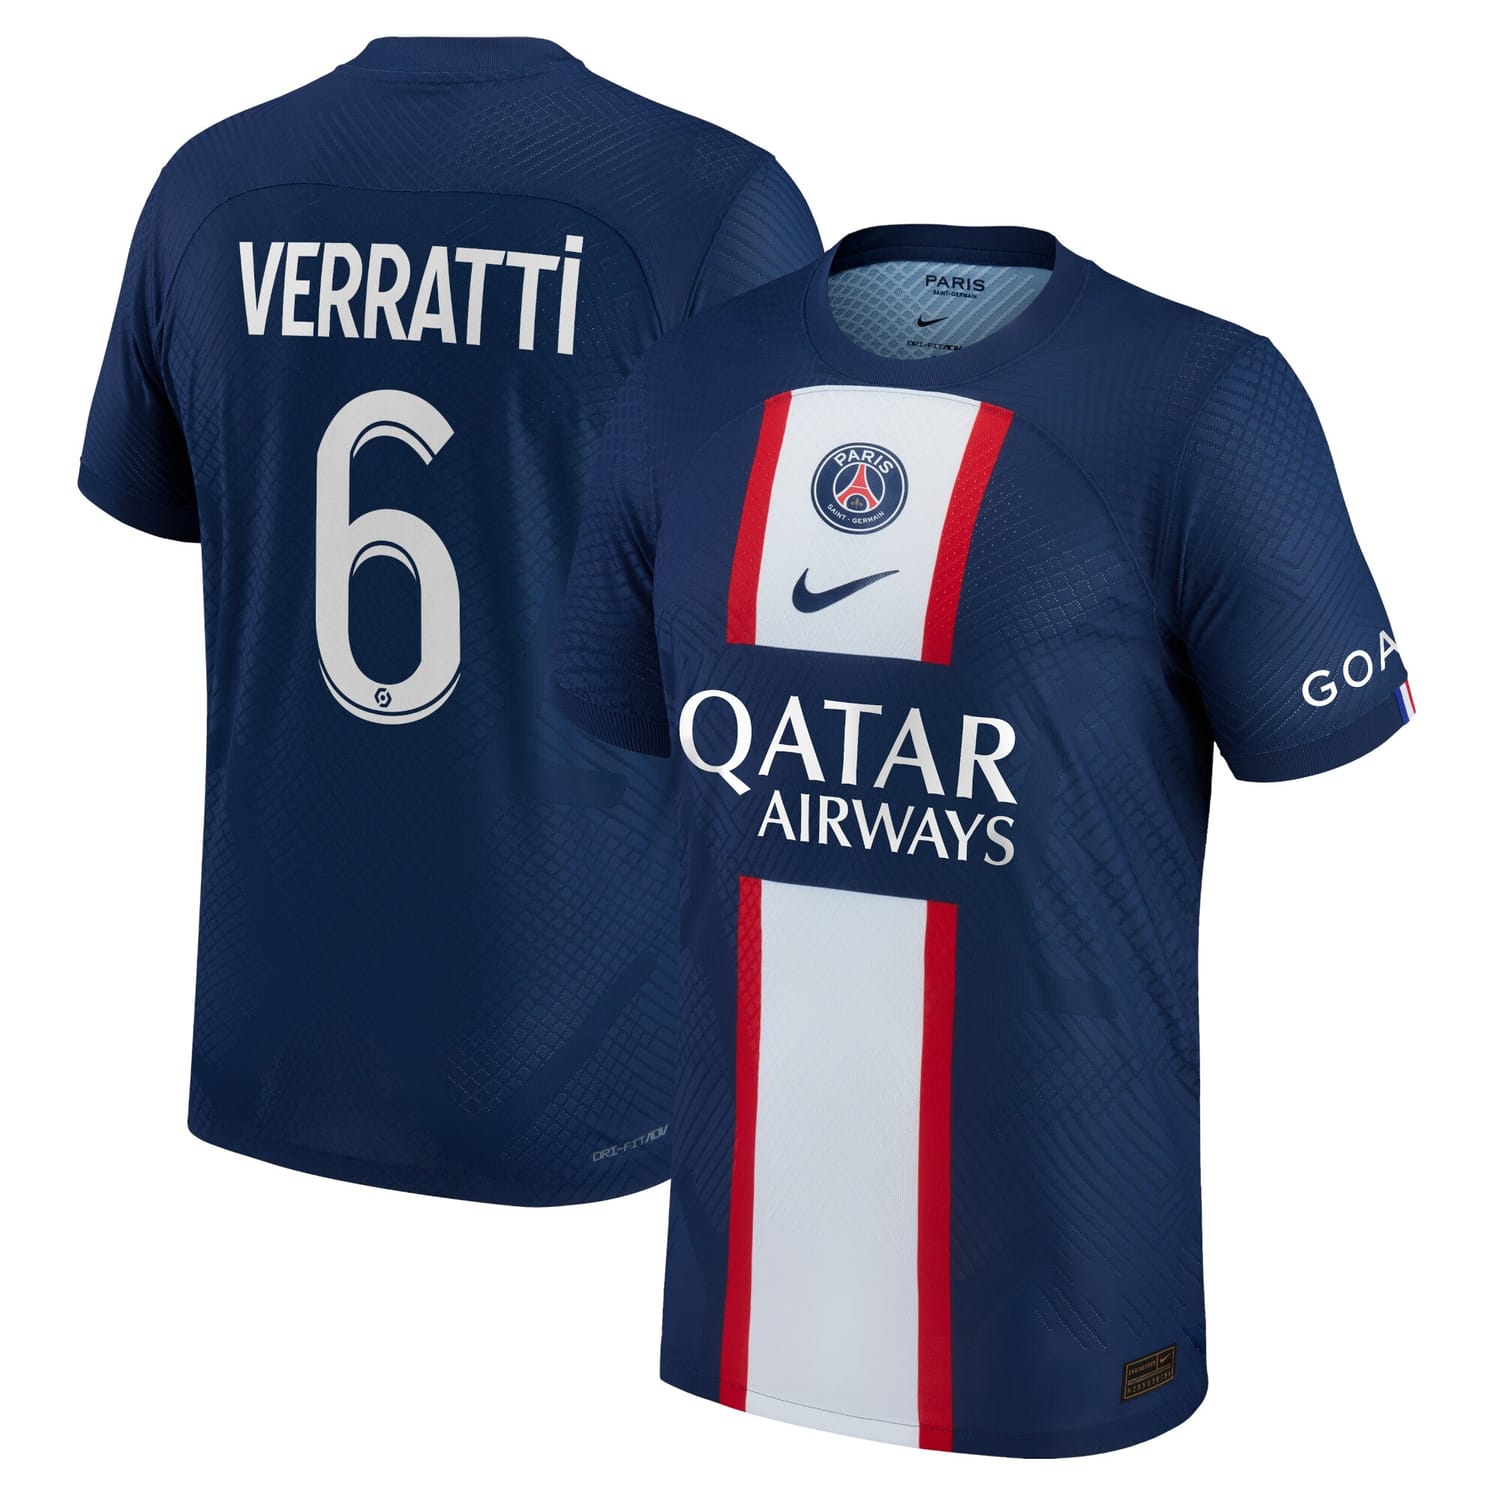 Ligue 1 Paris Saint-Germain Home Authentic Jersey Shirt 2022-23 player Marco Verratti 6 printing for Men